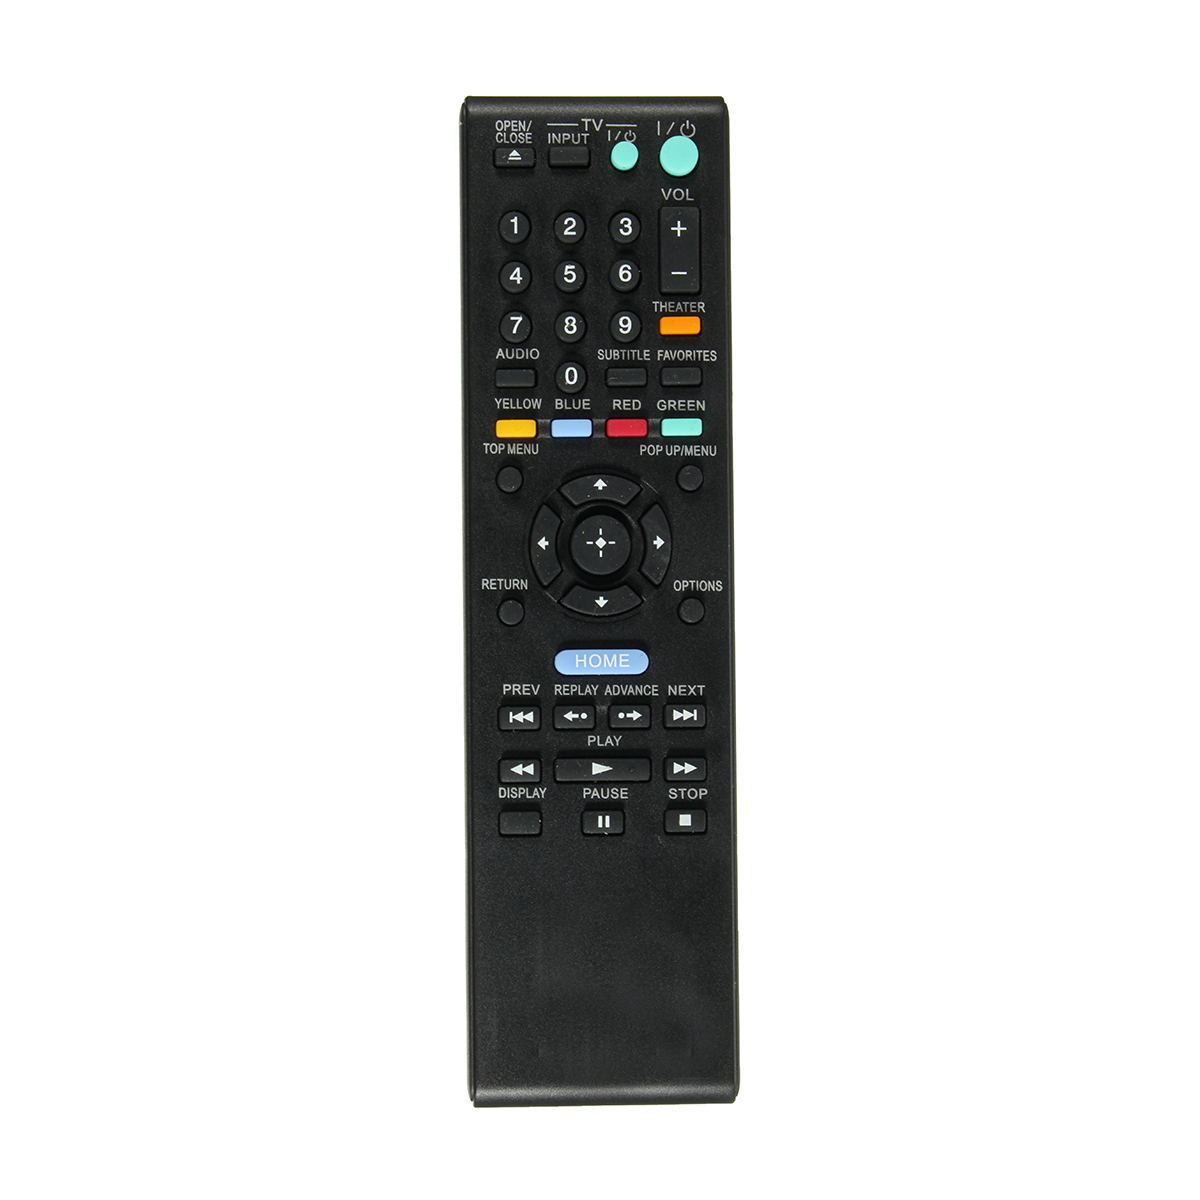 

RMT-B107A Remote Control For Sony Blu-Ray DVD Player BDP-S370 BDP-S470 BDP-S570